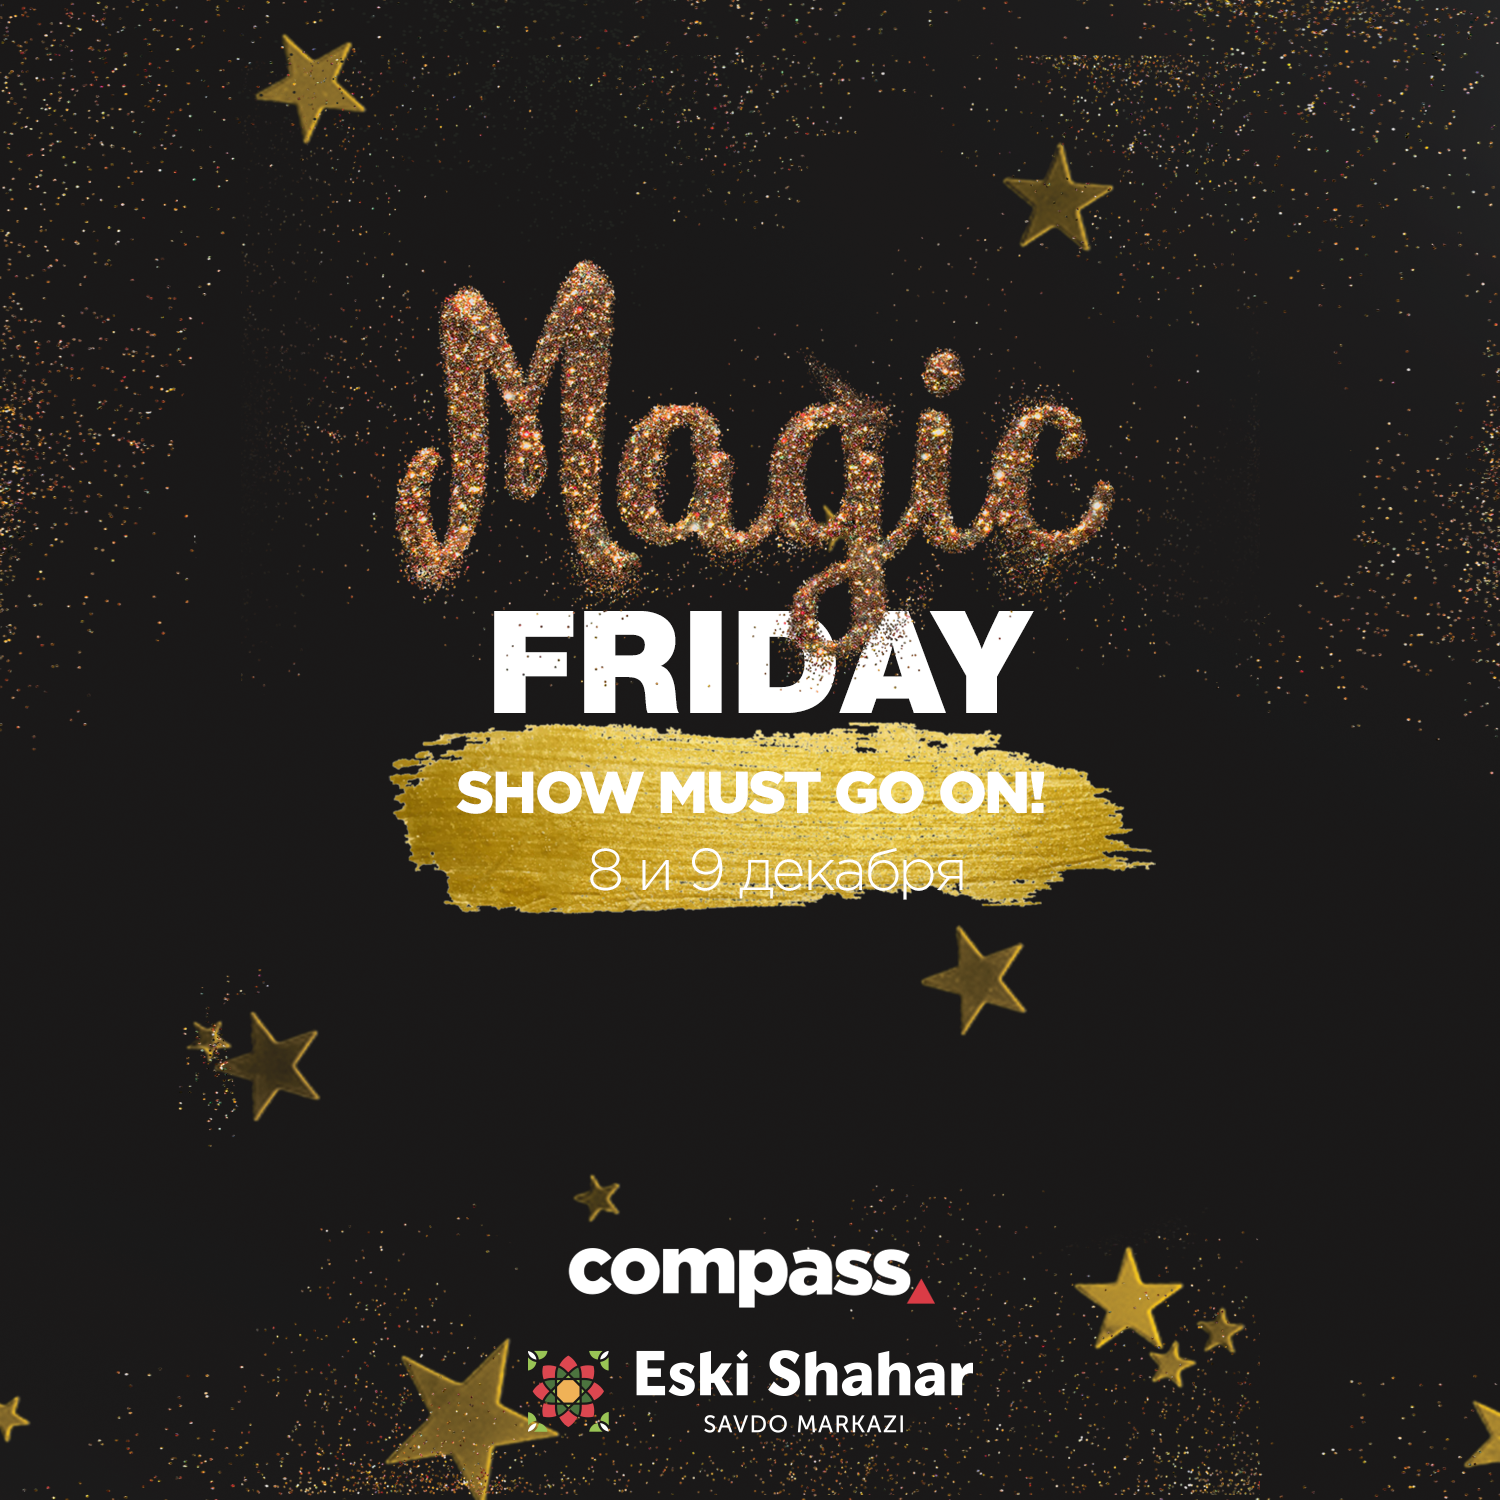 ТРЦ Compass и ТЦ Eski Shahar продлевают акцию Magic Friday на все выходные: скидки до 70%